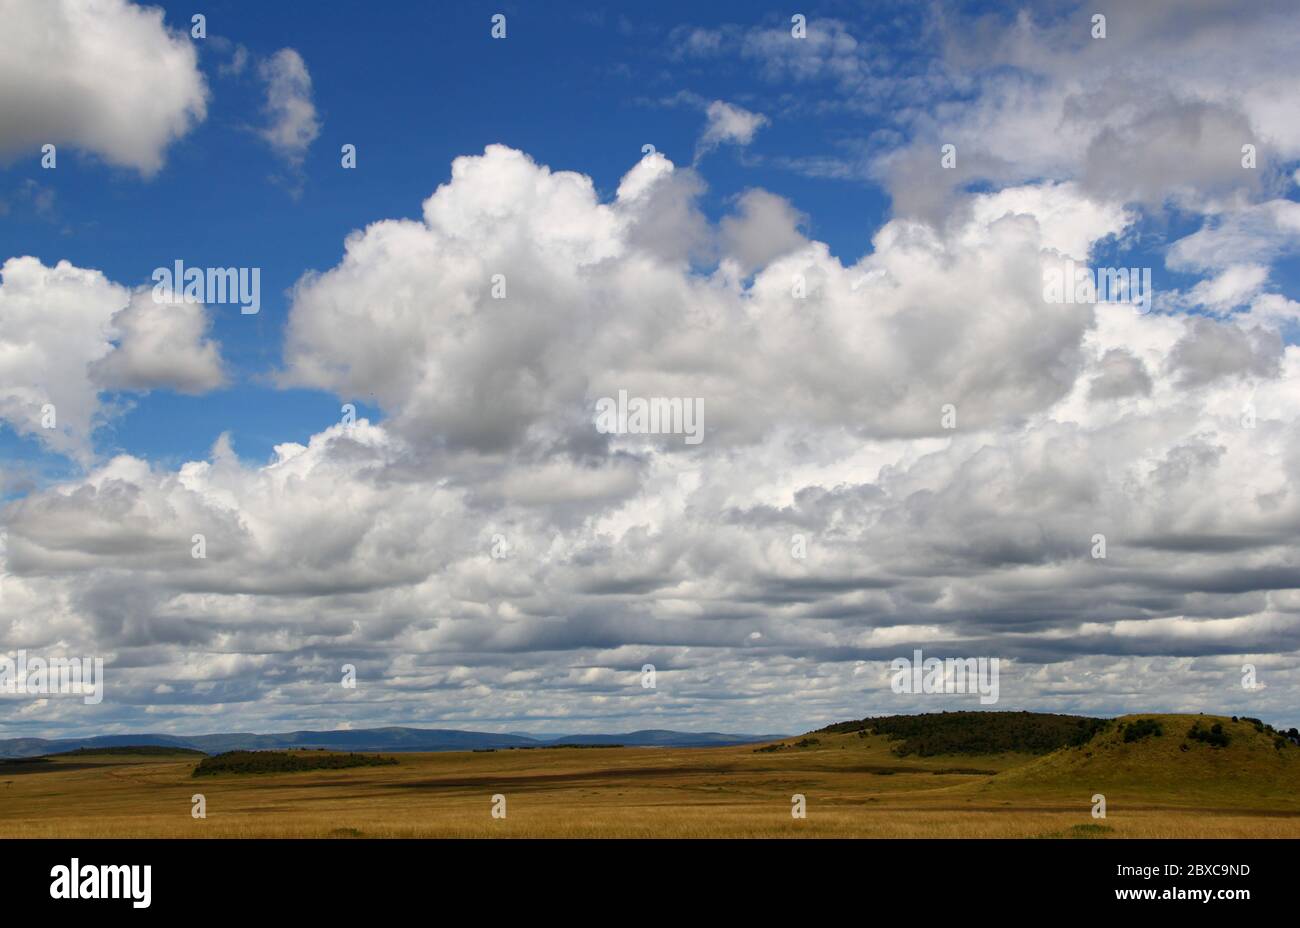 Paysage caractéristique et sans fin de la savane kenyane, le Mara Masai. De larges prairies dans la lumière dorée du soleil et le ciel bleu d'été Banque D'Images